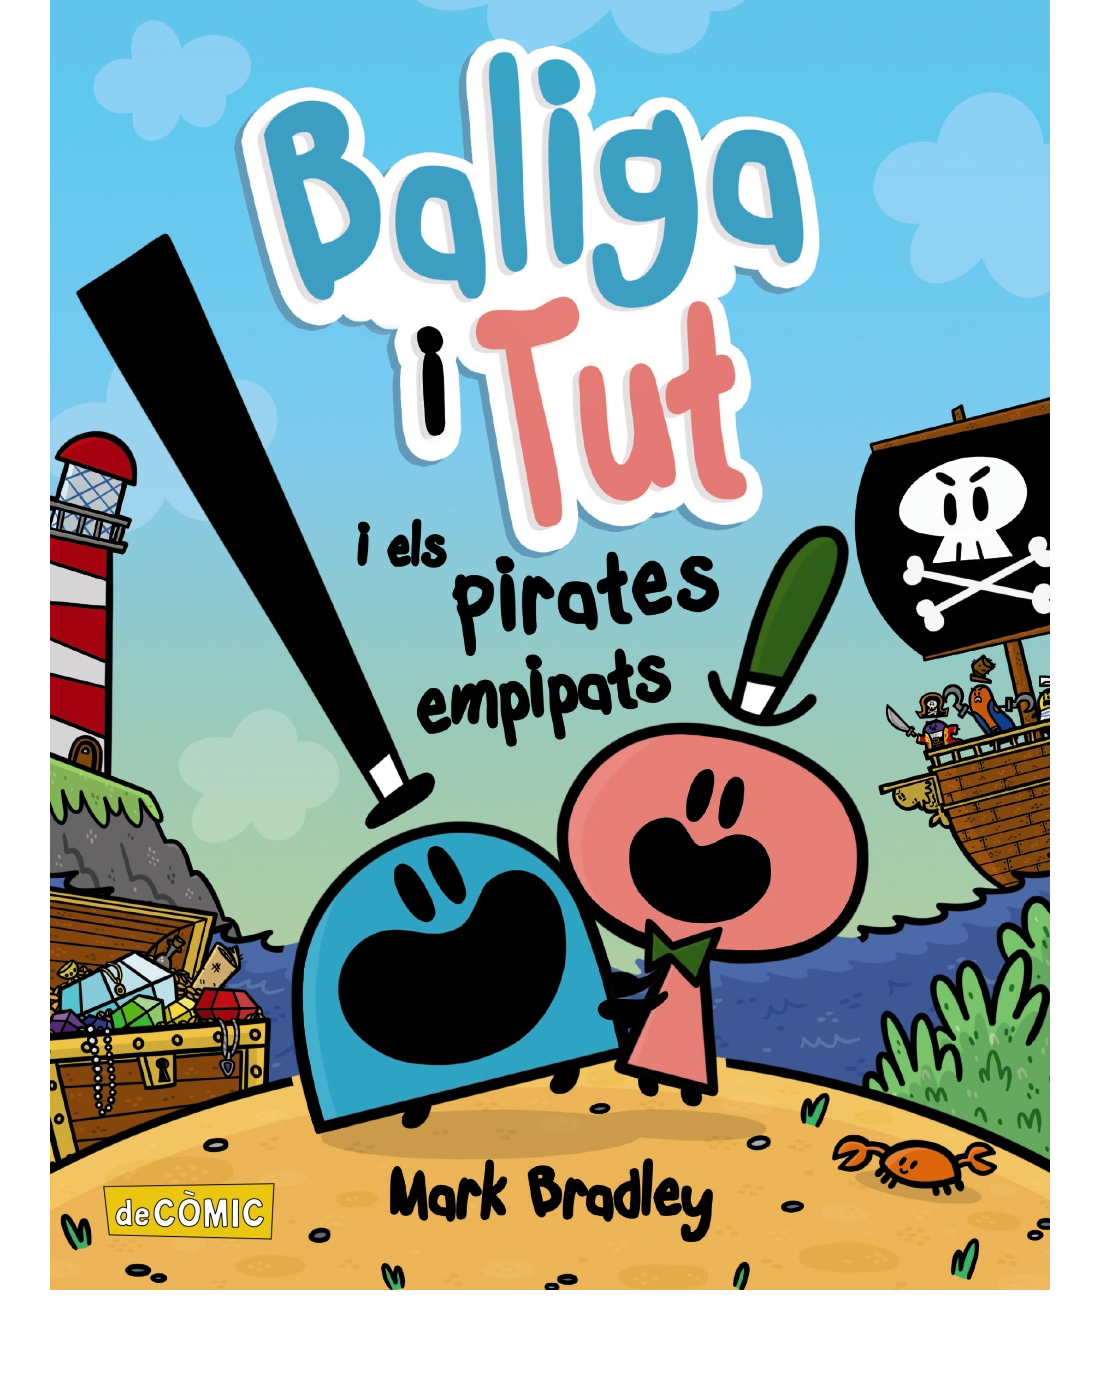 Baliga i Tut i els pirates empipats